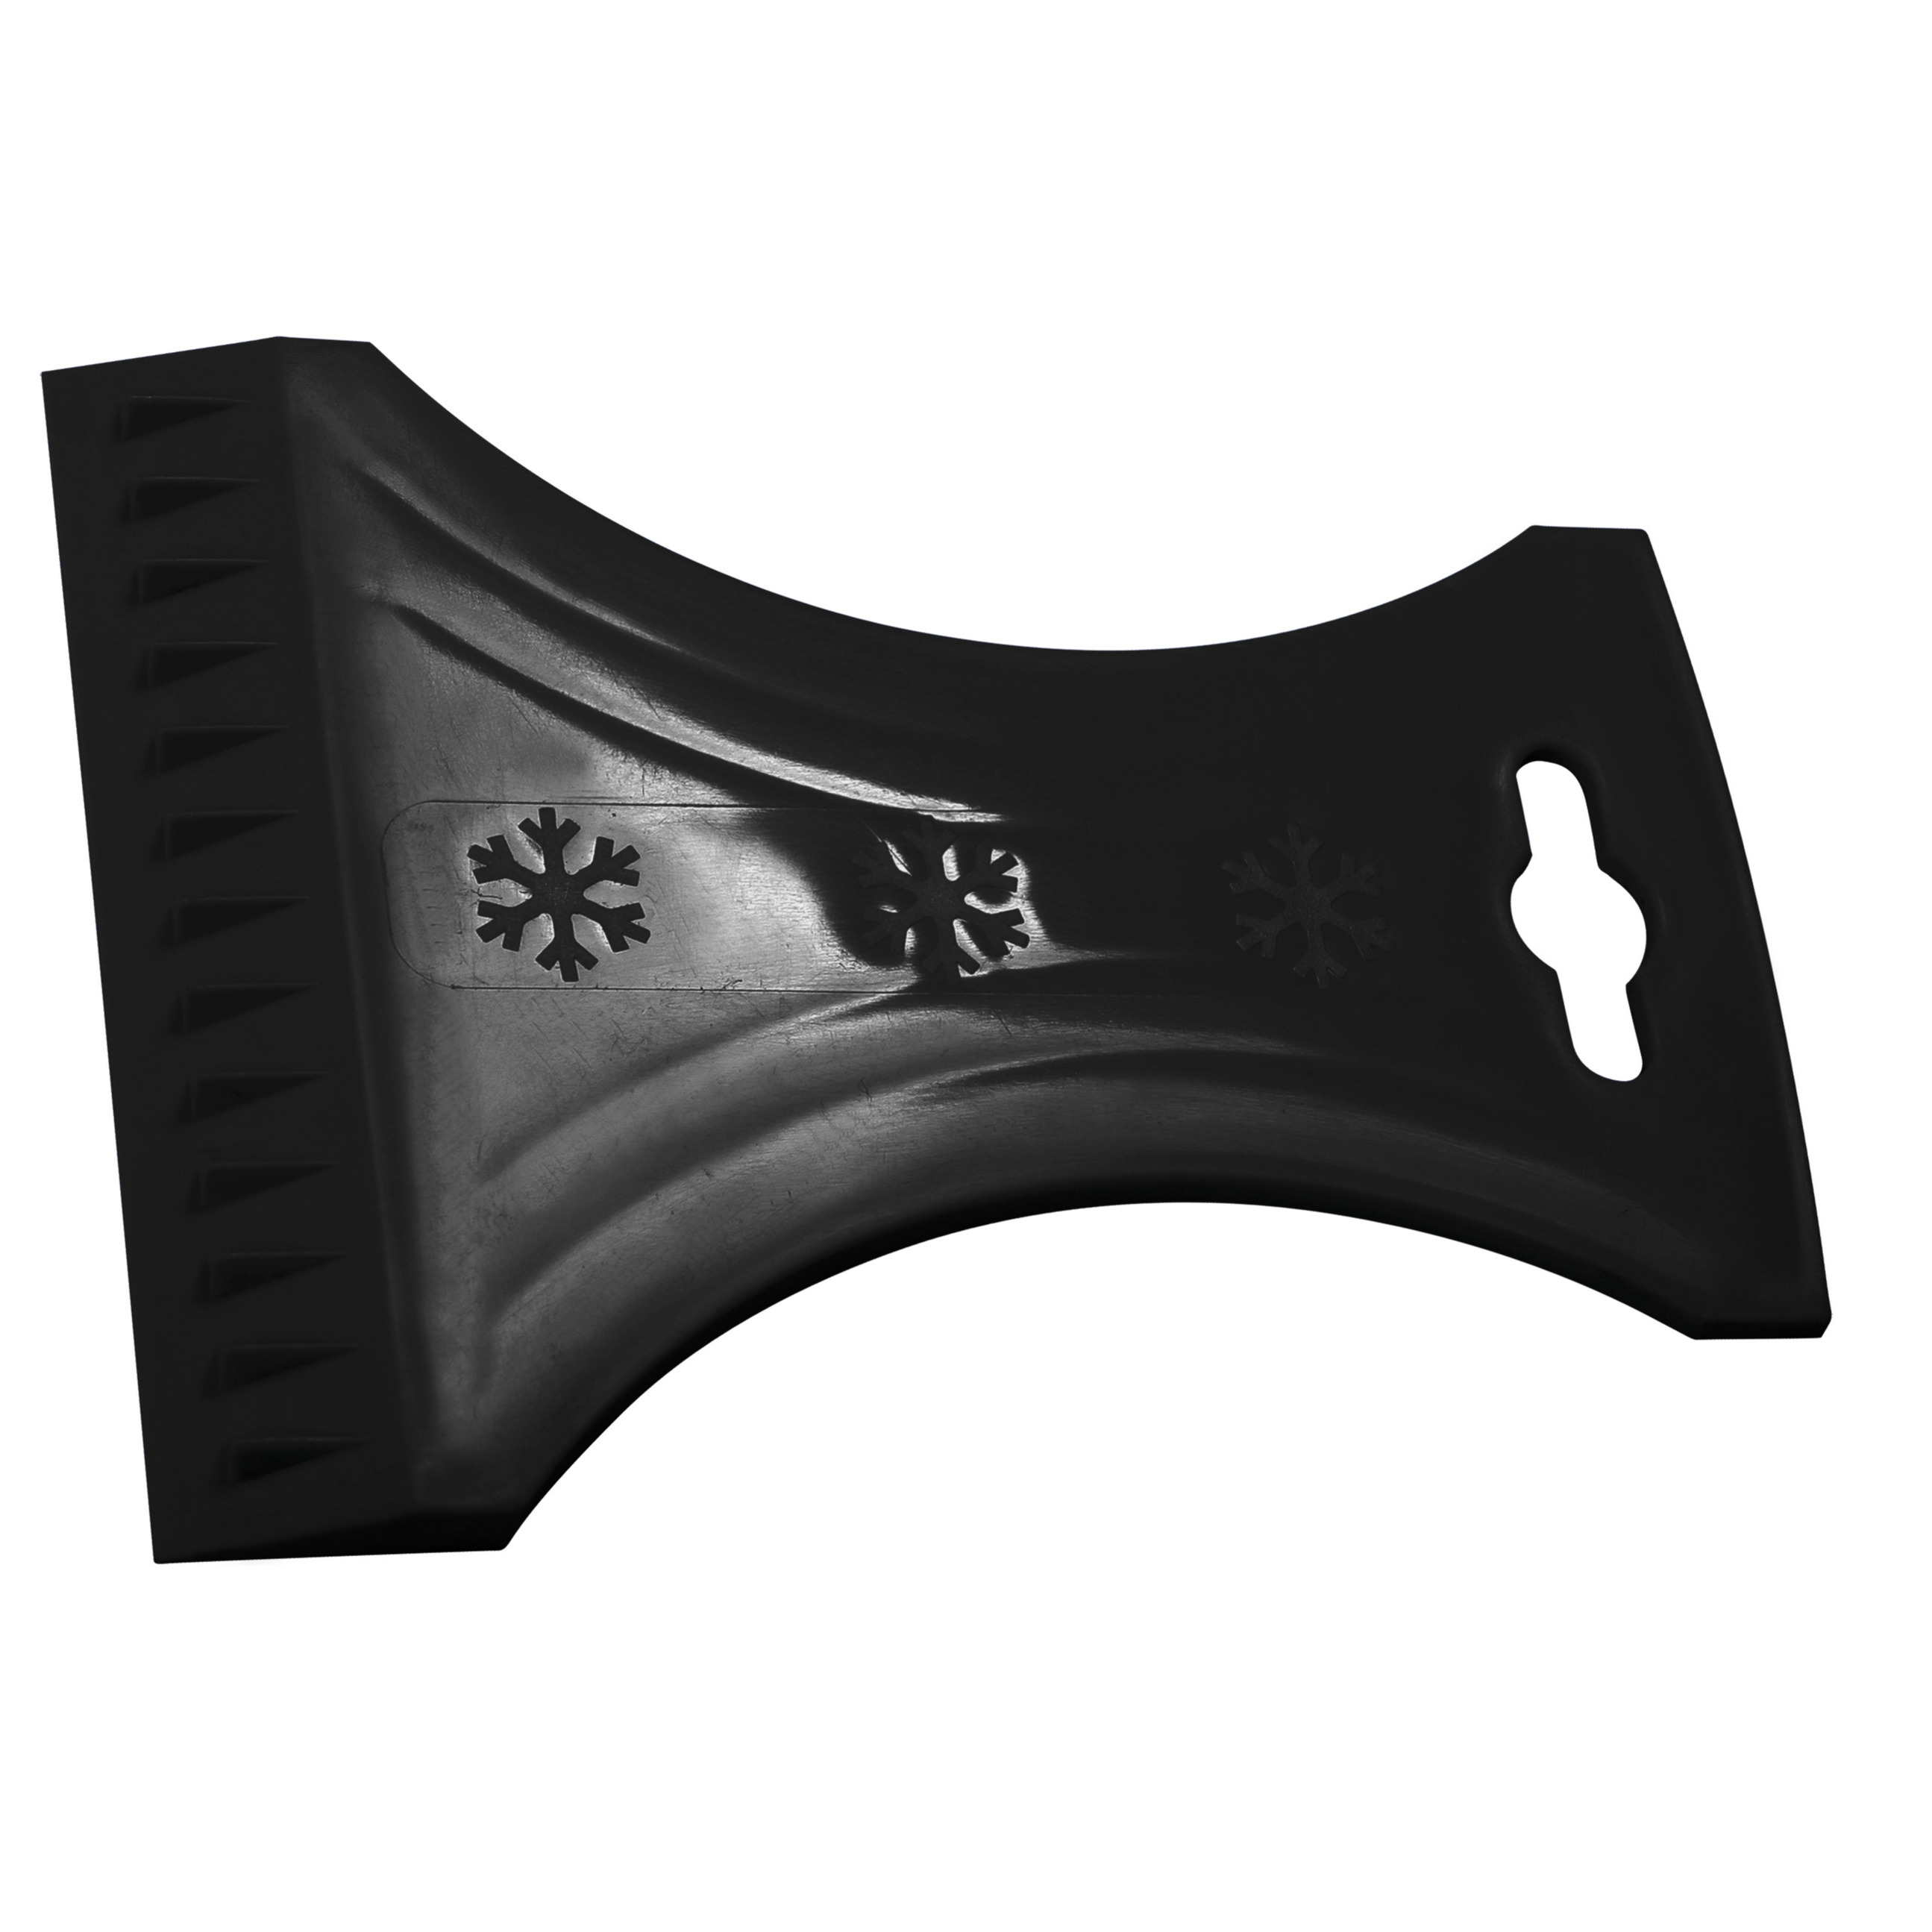 IJskrabber-raamkrabber zwart kunststof 10 x 13 cm